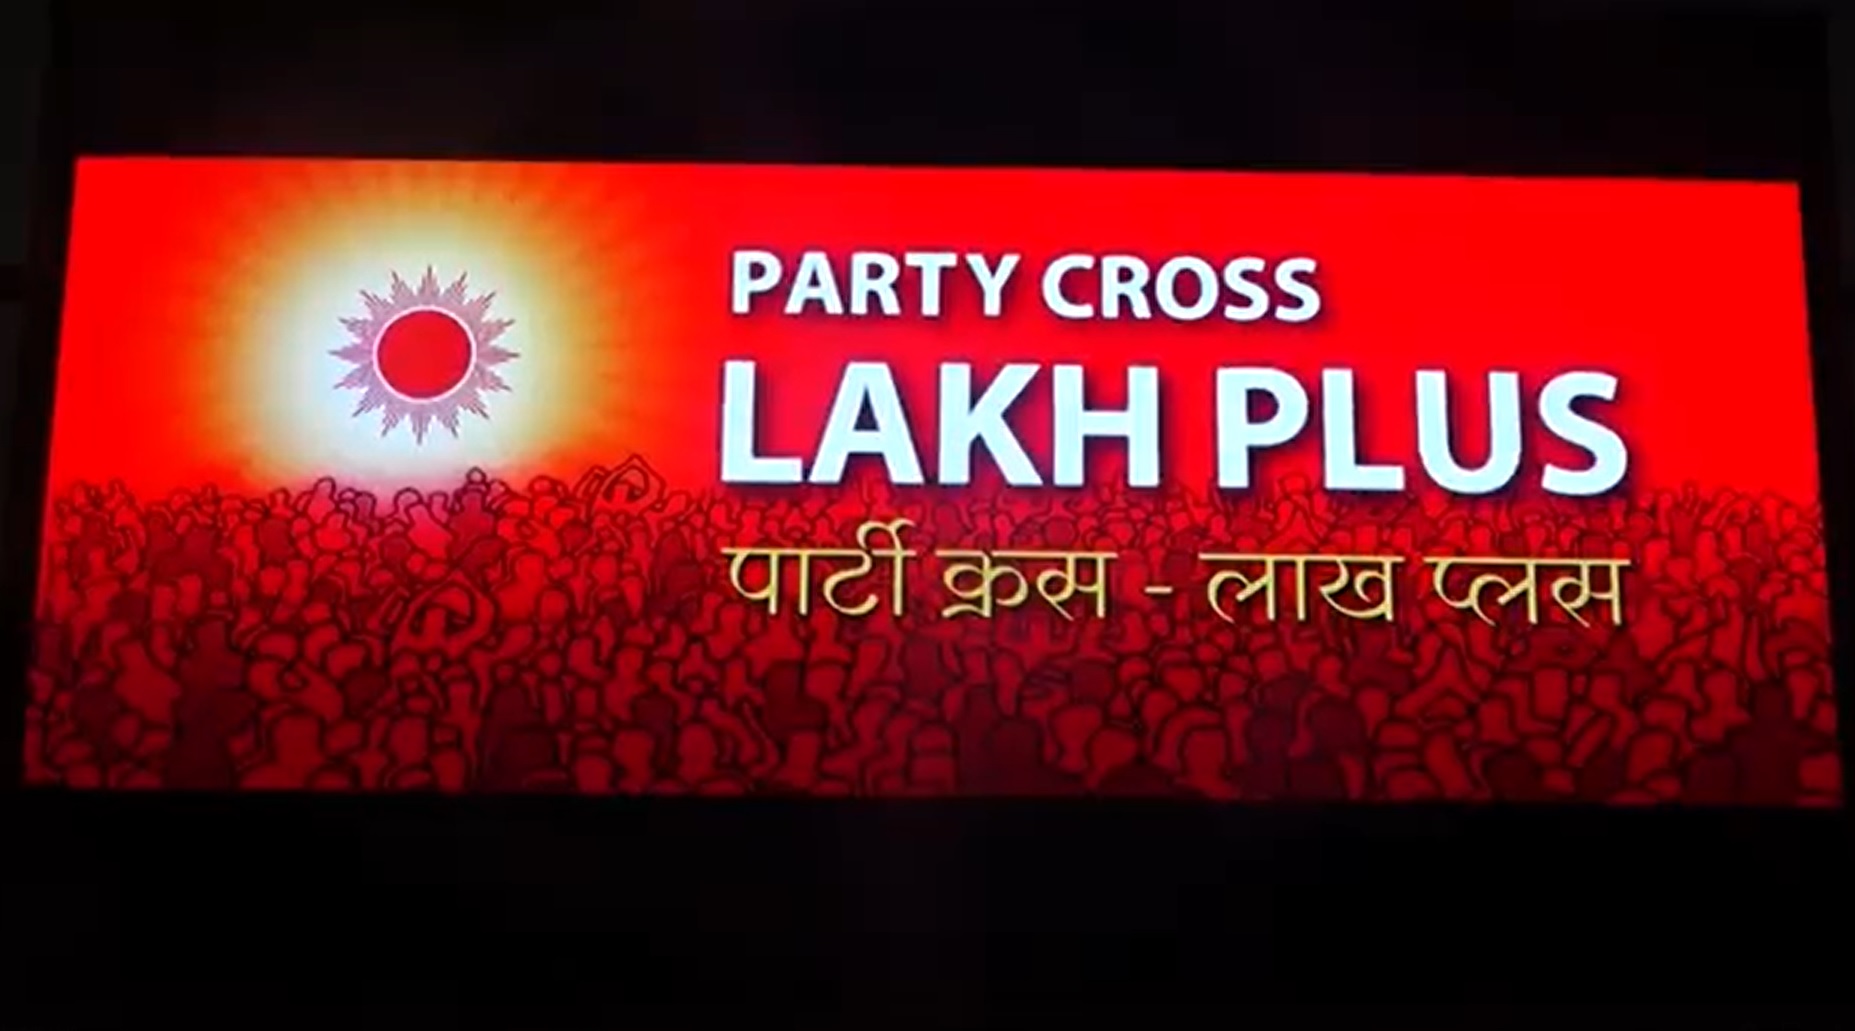 नेकपा एमालेको ‘पार्टी क्रस, लाख प्लस’ कार्यक्रम शुरु (भिडियो रिपोर्टसहित)